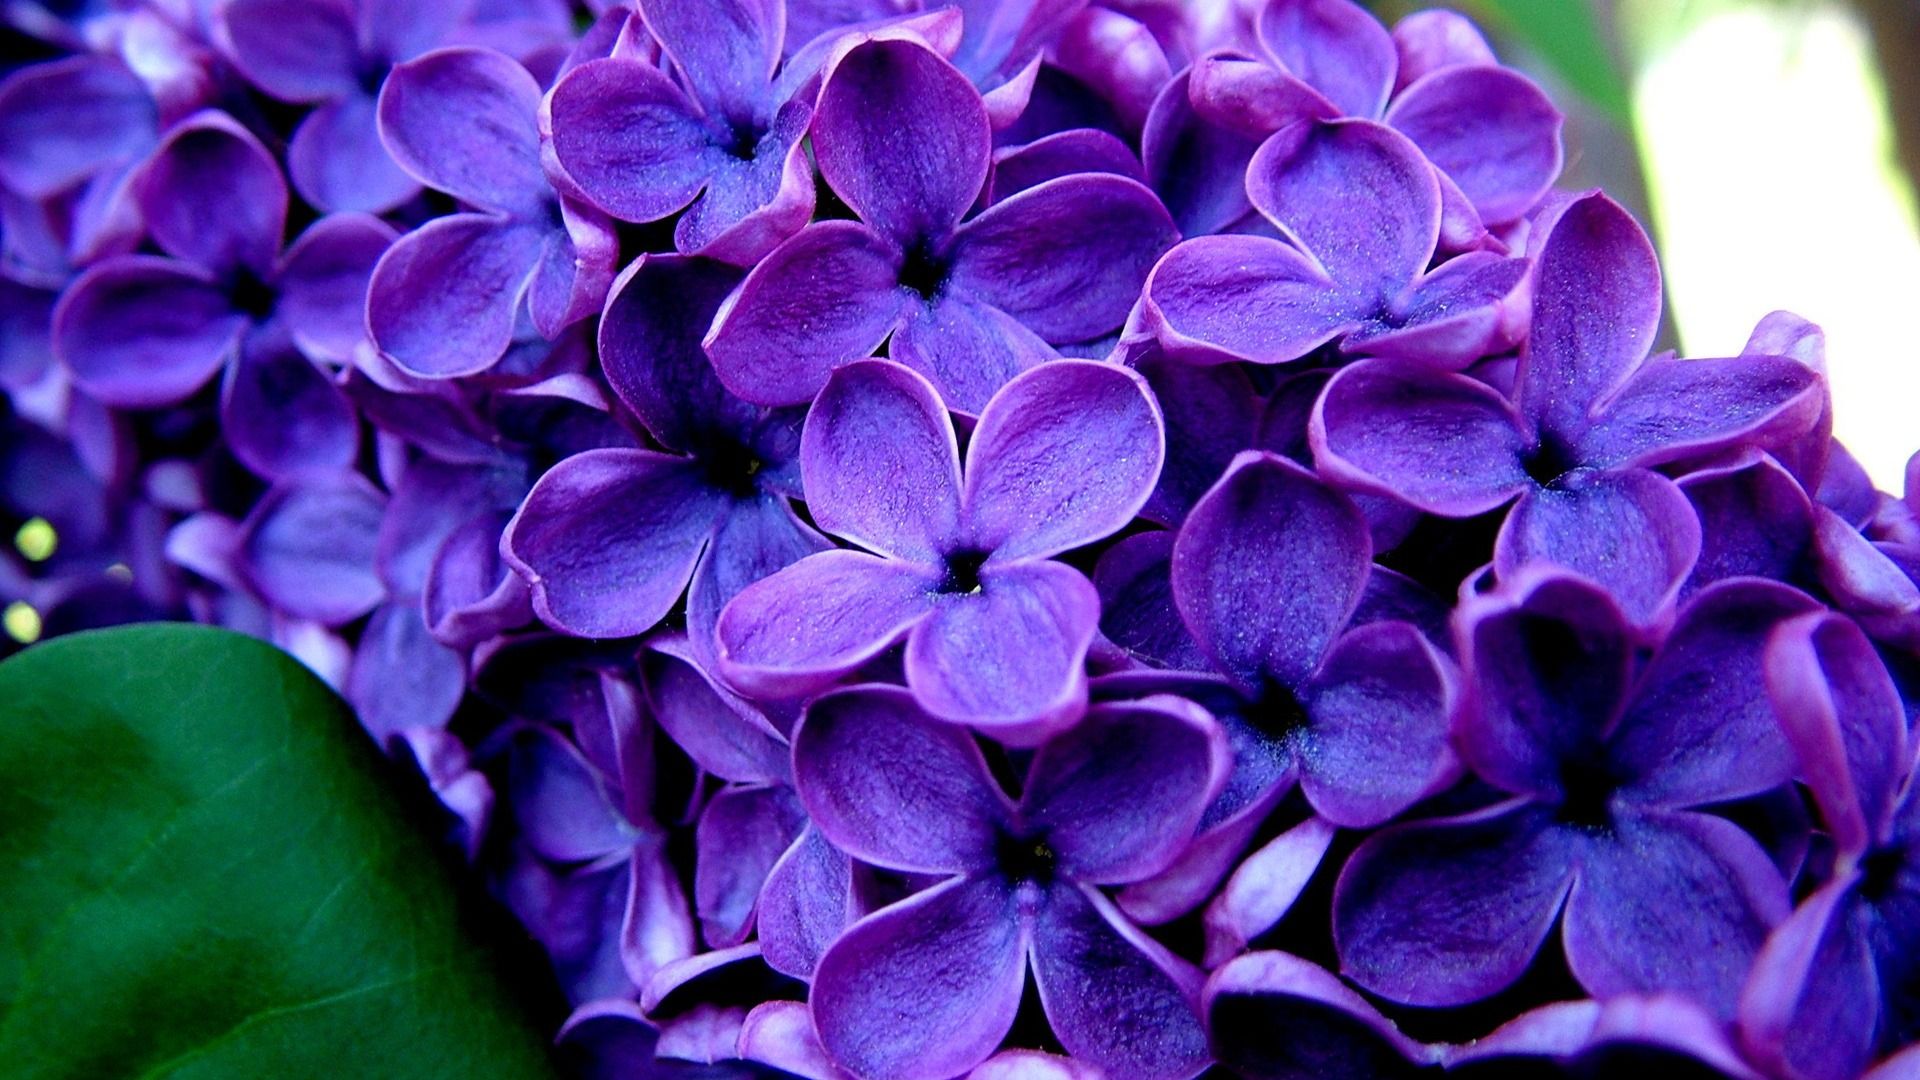 Best Purple Flower Wallpapers In High Quality, Keena - Full Screen Flower Hd - HD Wallpaper 